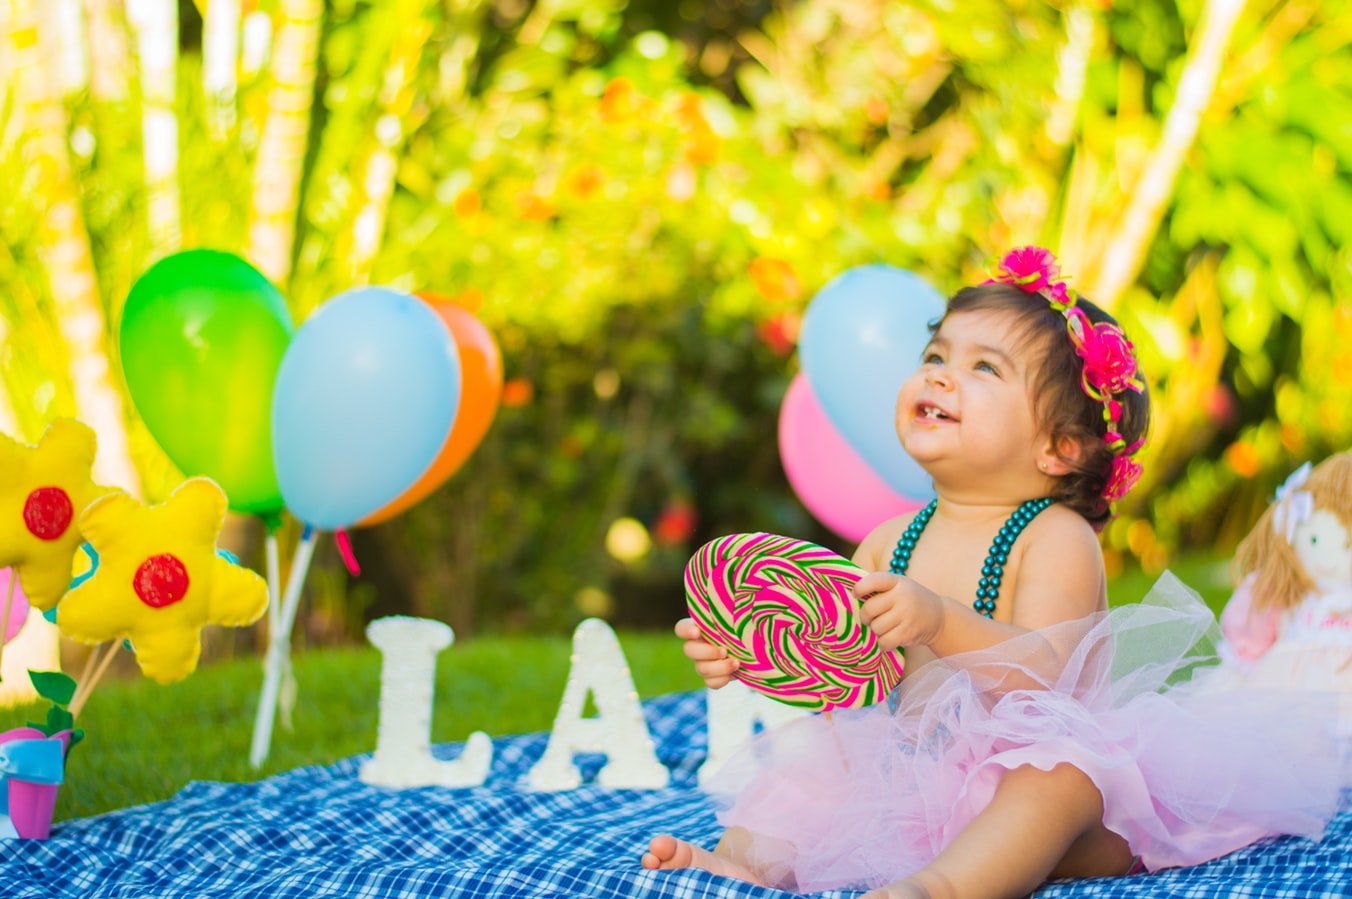 Menina criança usando fantasia, sentada em uma toalha de piquenique, segurando um pirulito em meio a balões de aniversário.